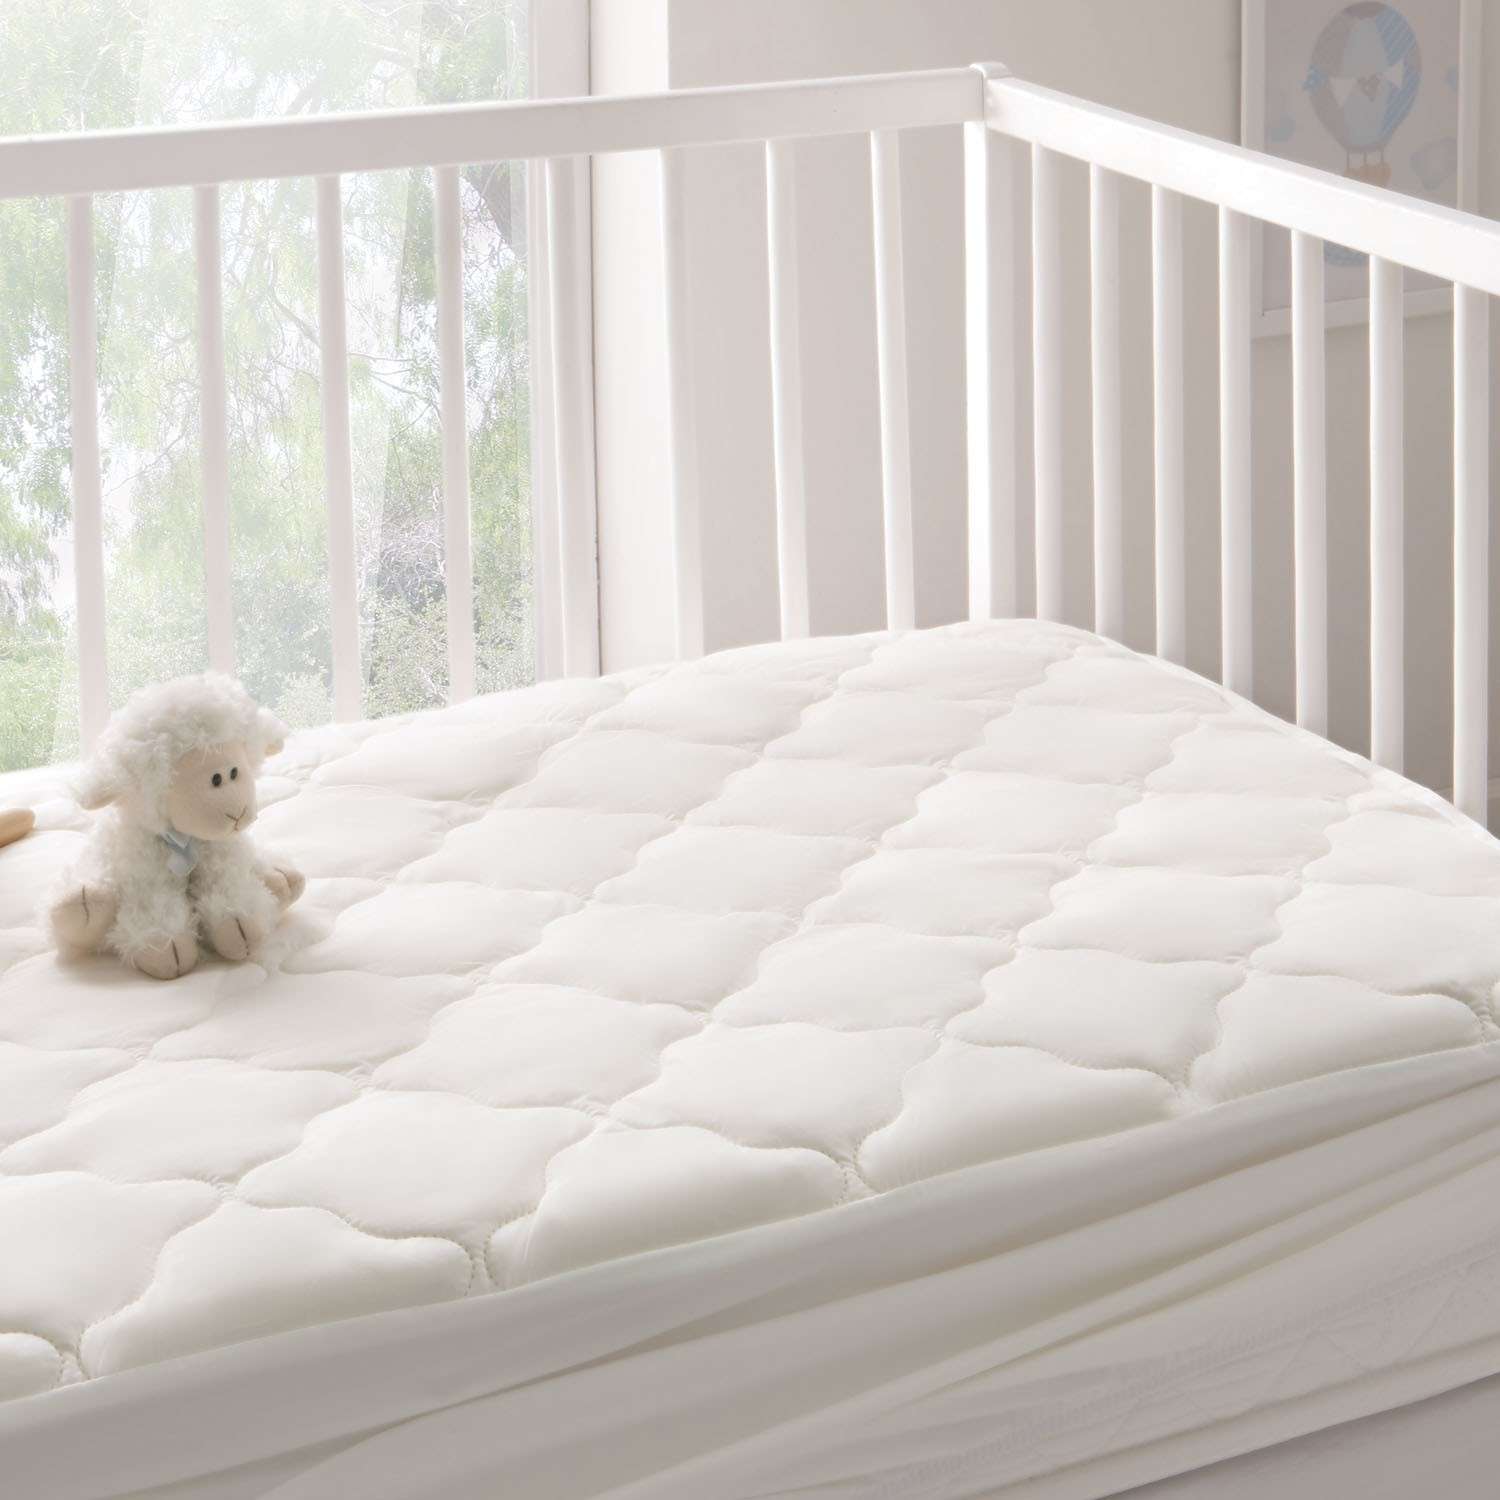 Наматрасник в кроватку Yatas Bedding белый на резинке 60x120 Superwashed Baby - фото 2